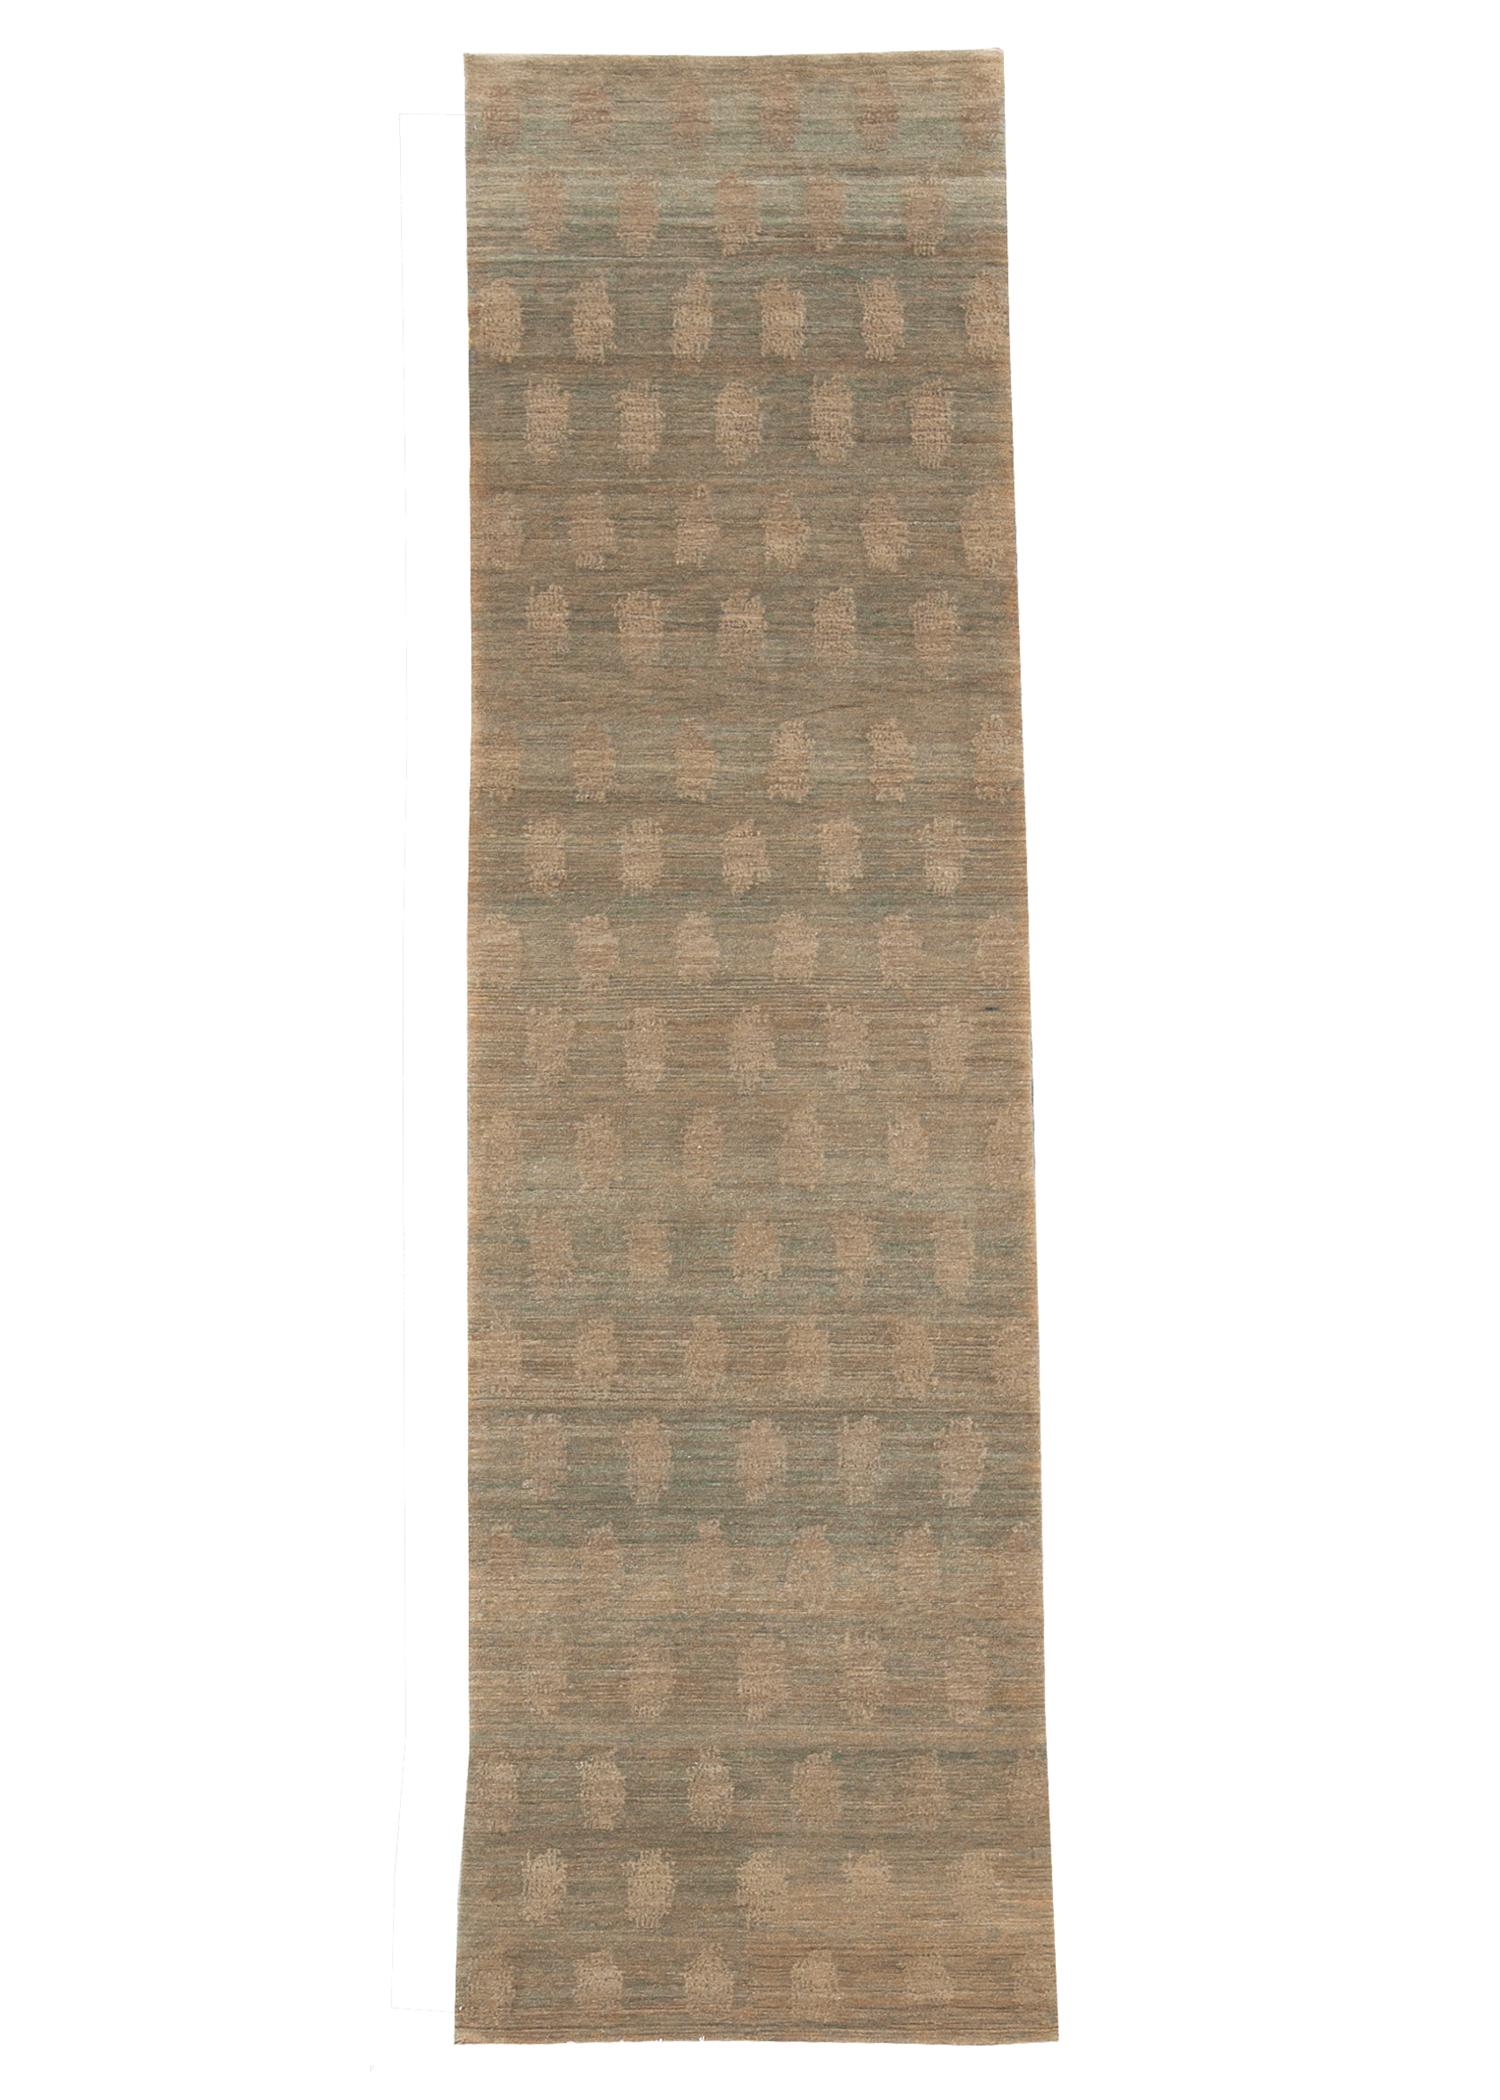 Japanese Ikat (86875)image